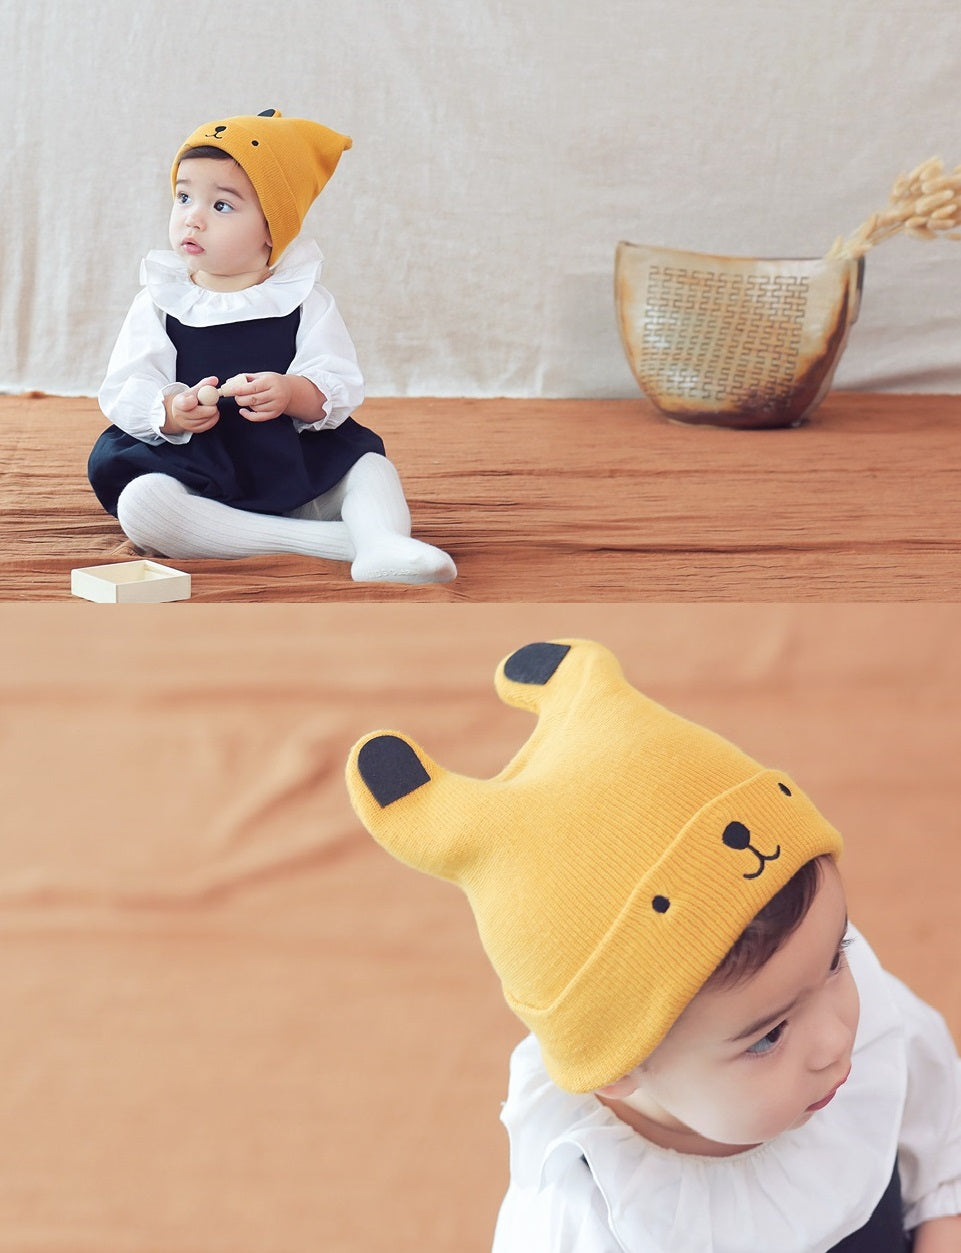 Winter Baby Hat - Knit Beanie 